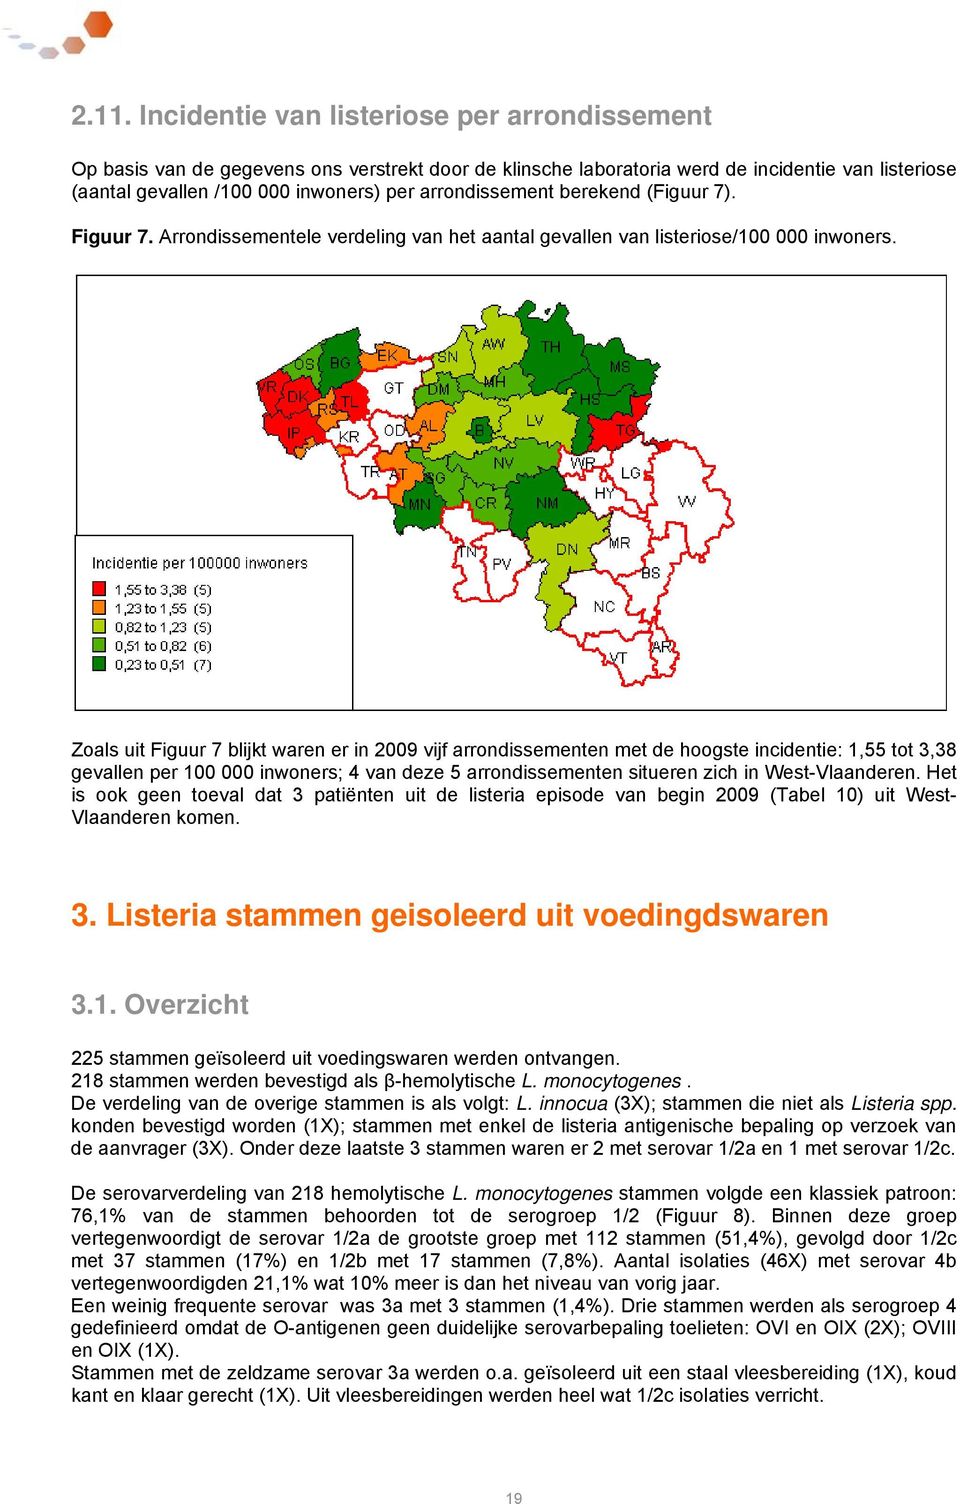 Zoals uit Figuur 7 blijkt waren er in 2009 vijf arrondissementen met de hoogste incidentie: 1,55 tot 3,38 gevallen per 100 000 inwoners; 4 van deze 5 arrondissementen situeren zich in West-Vlaanderen.